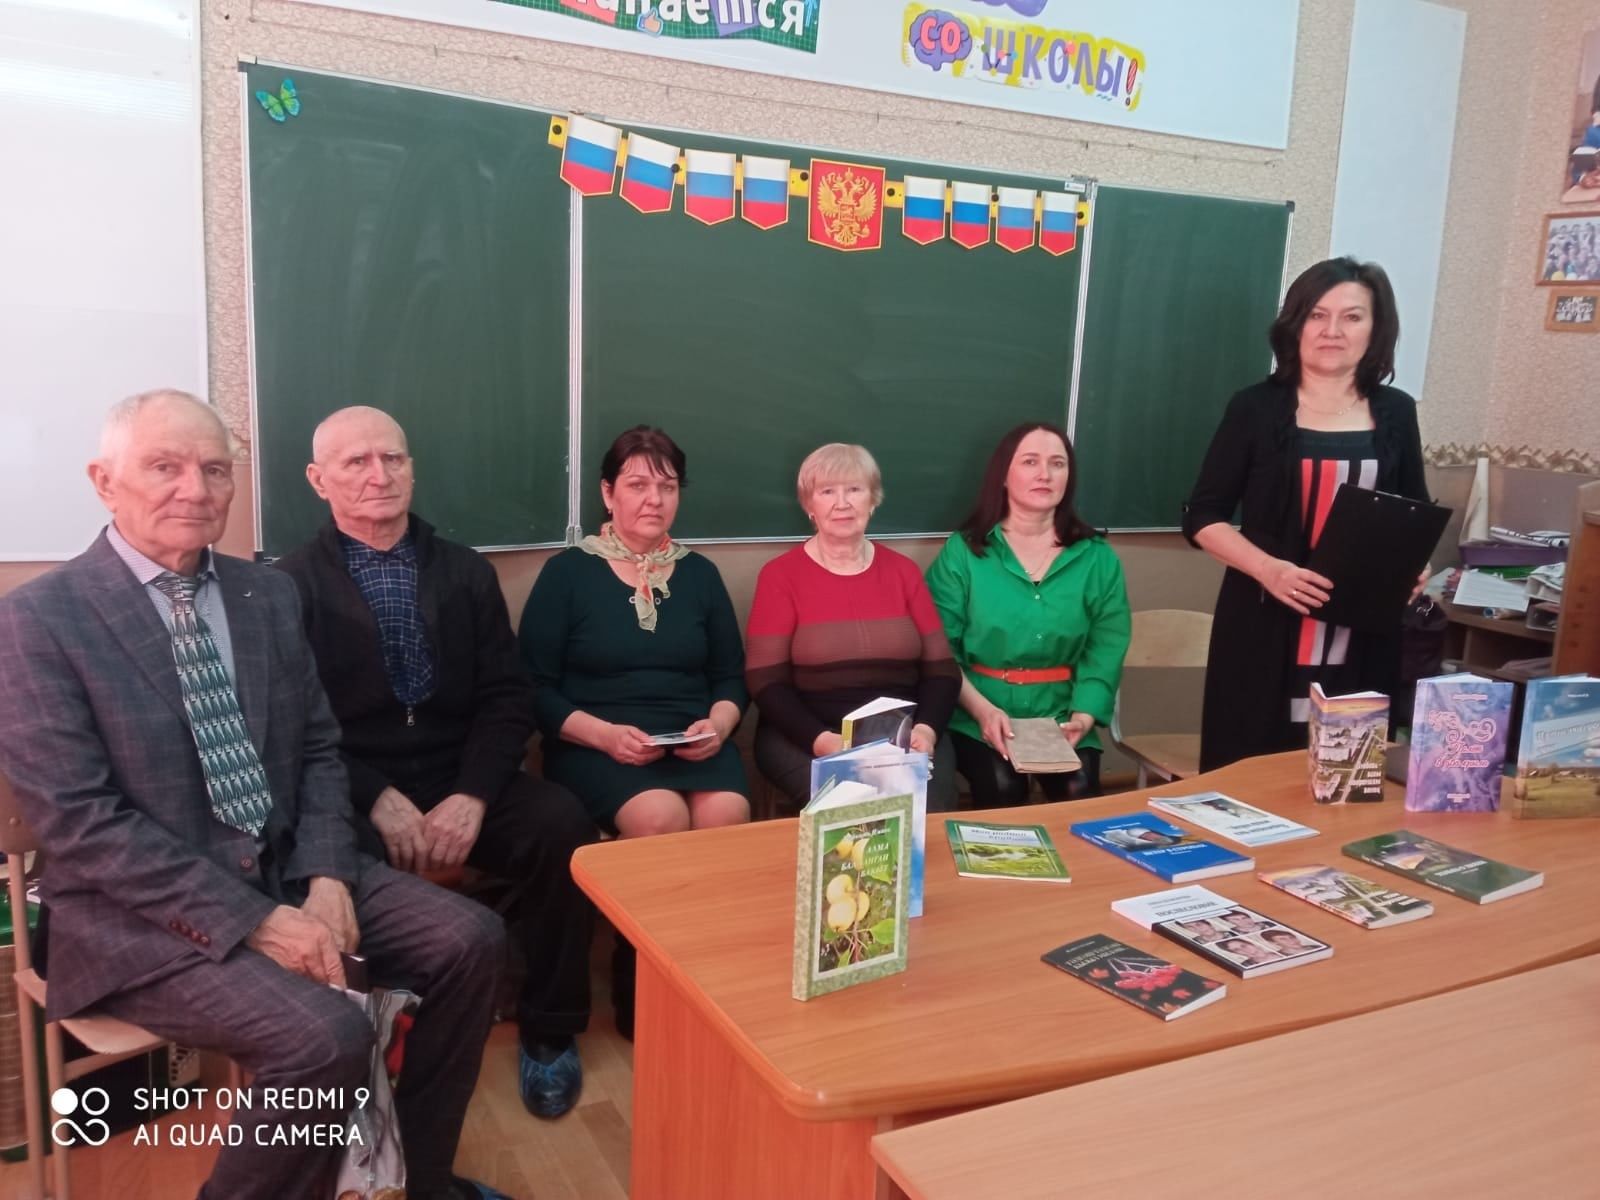 Камполянские поэты литературного сообщества «Родник» побывали в гостях в селе Старошешминец